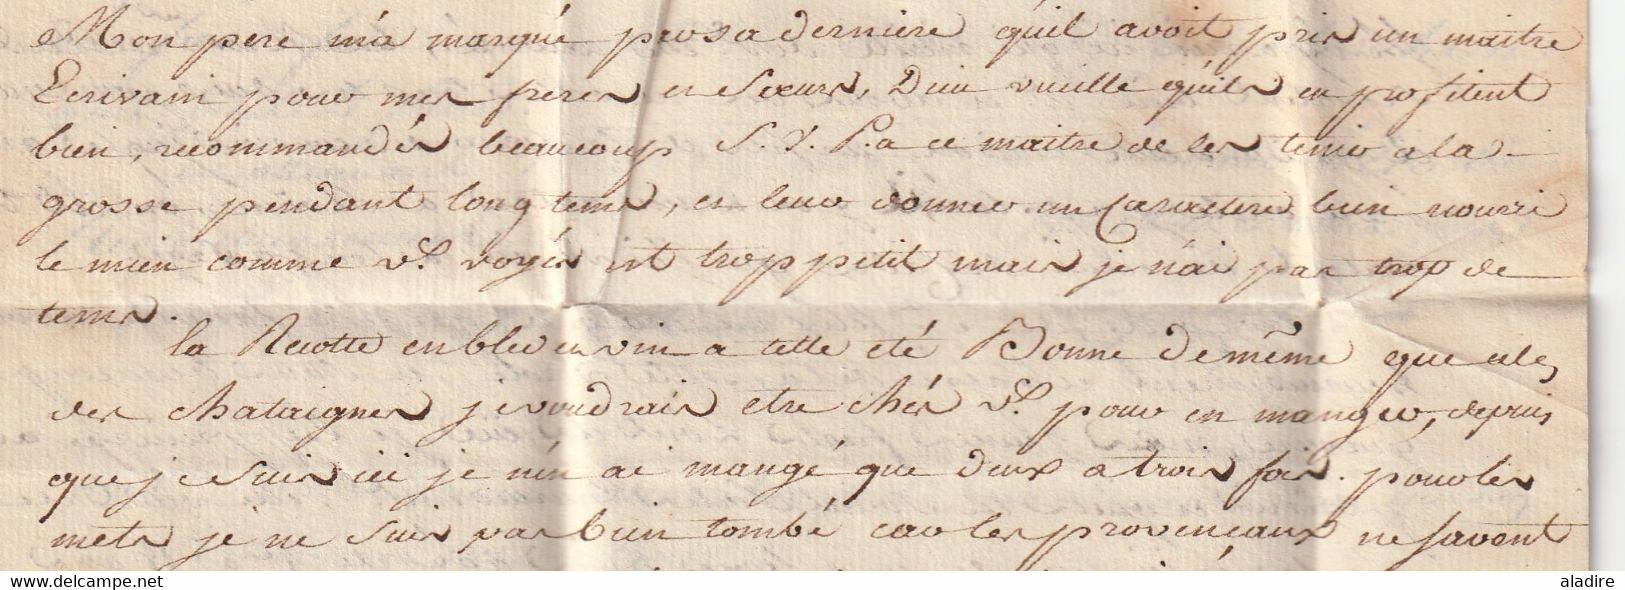 1777 - Marque manuscrite Marseille sur Lettre avec corresp  filiale de 3 p vers Pont de Camaret en Rouergue par Lodève